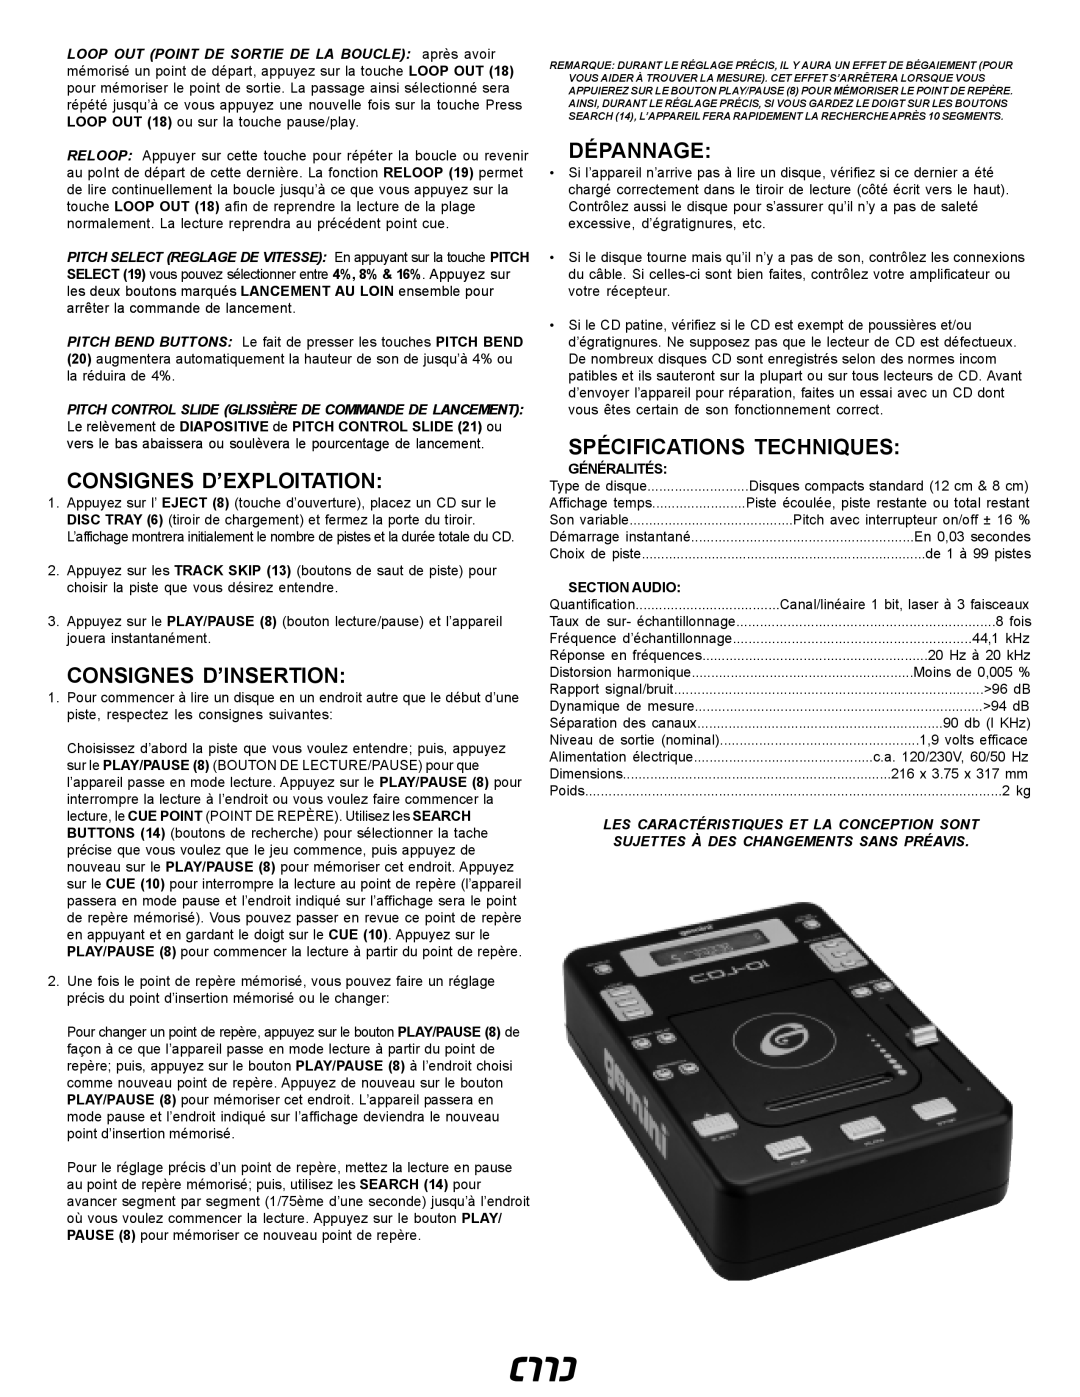 Gemini CDJ-01 manual Consignes D’Exploitation, Consignes D’Insertion, Dépannage, Spécifications Techniques, Généralités 